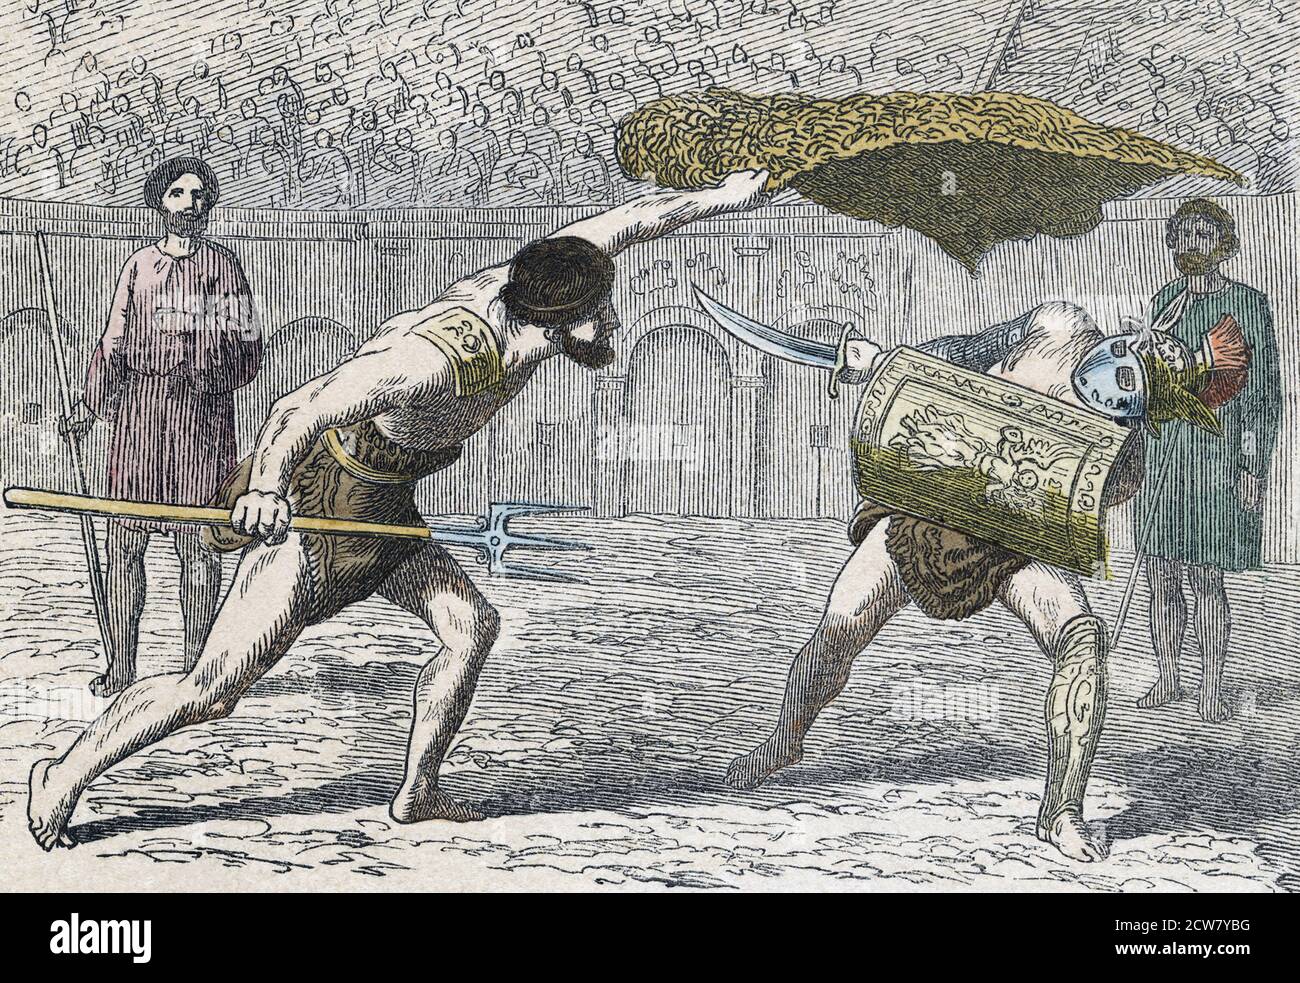 Gladiatorenkampf zwischen einem Retiarius, oder Netzmann, auf der linken Seite und einem Samniten. Nach einer Mitte des 19. Jahrhunderts Illustration von einem unbekannten Künstler. Stockfoto